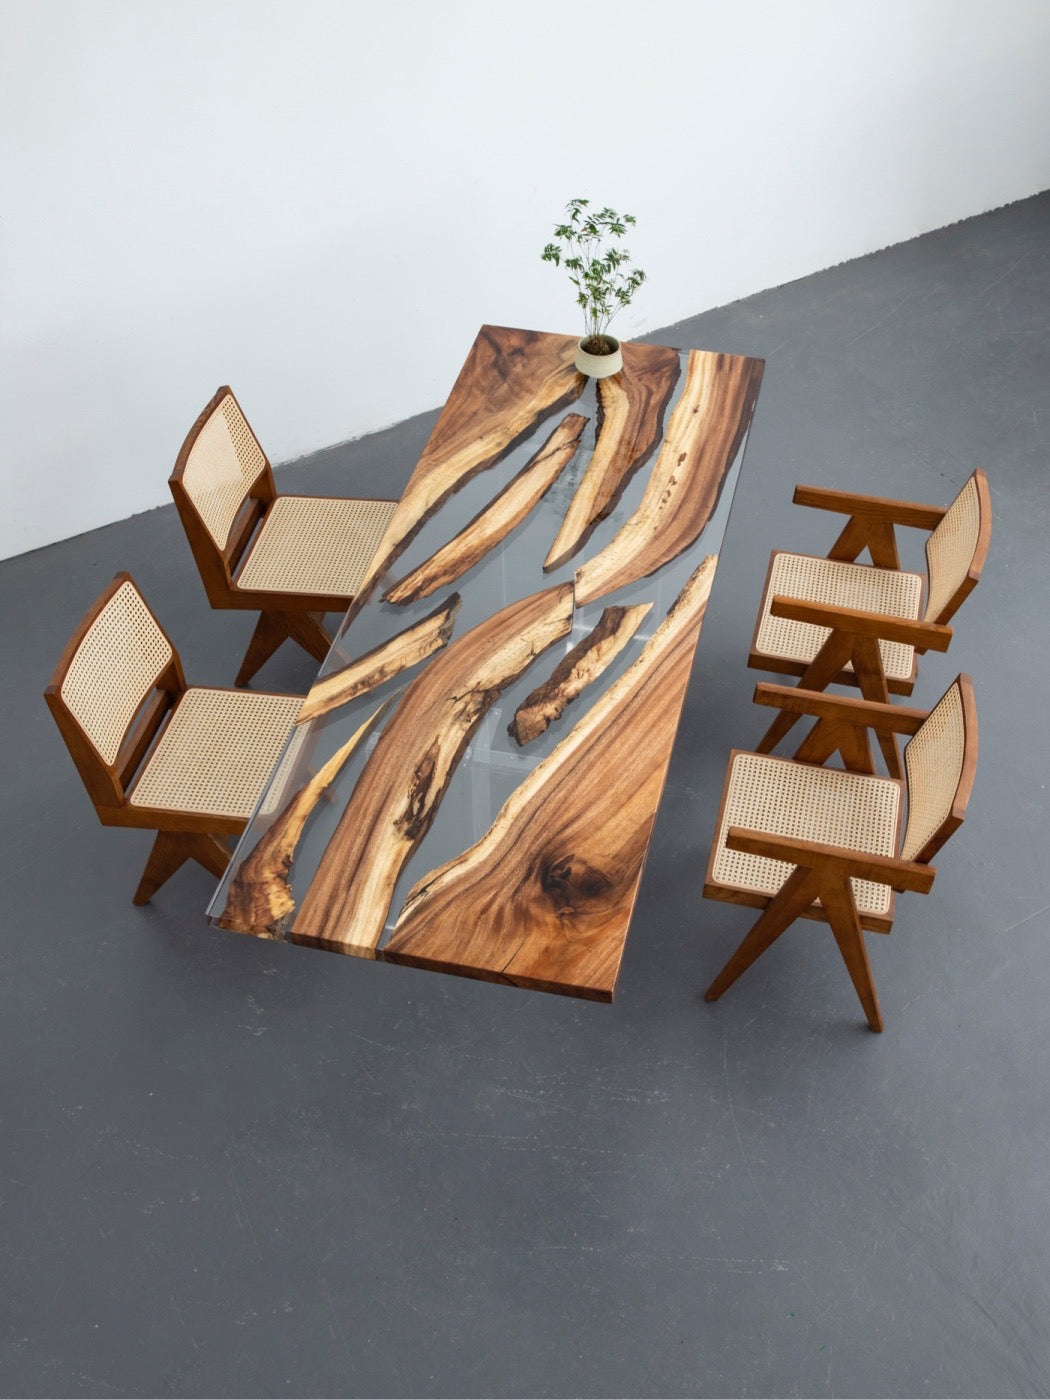 グローエポキシ樹脂テーブル、アートレジンエポキシ樹脂、エポキシ樹脂アートアイデア、エポキシ樹脂木製テーブル